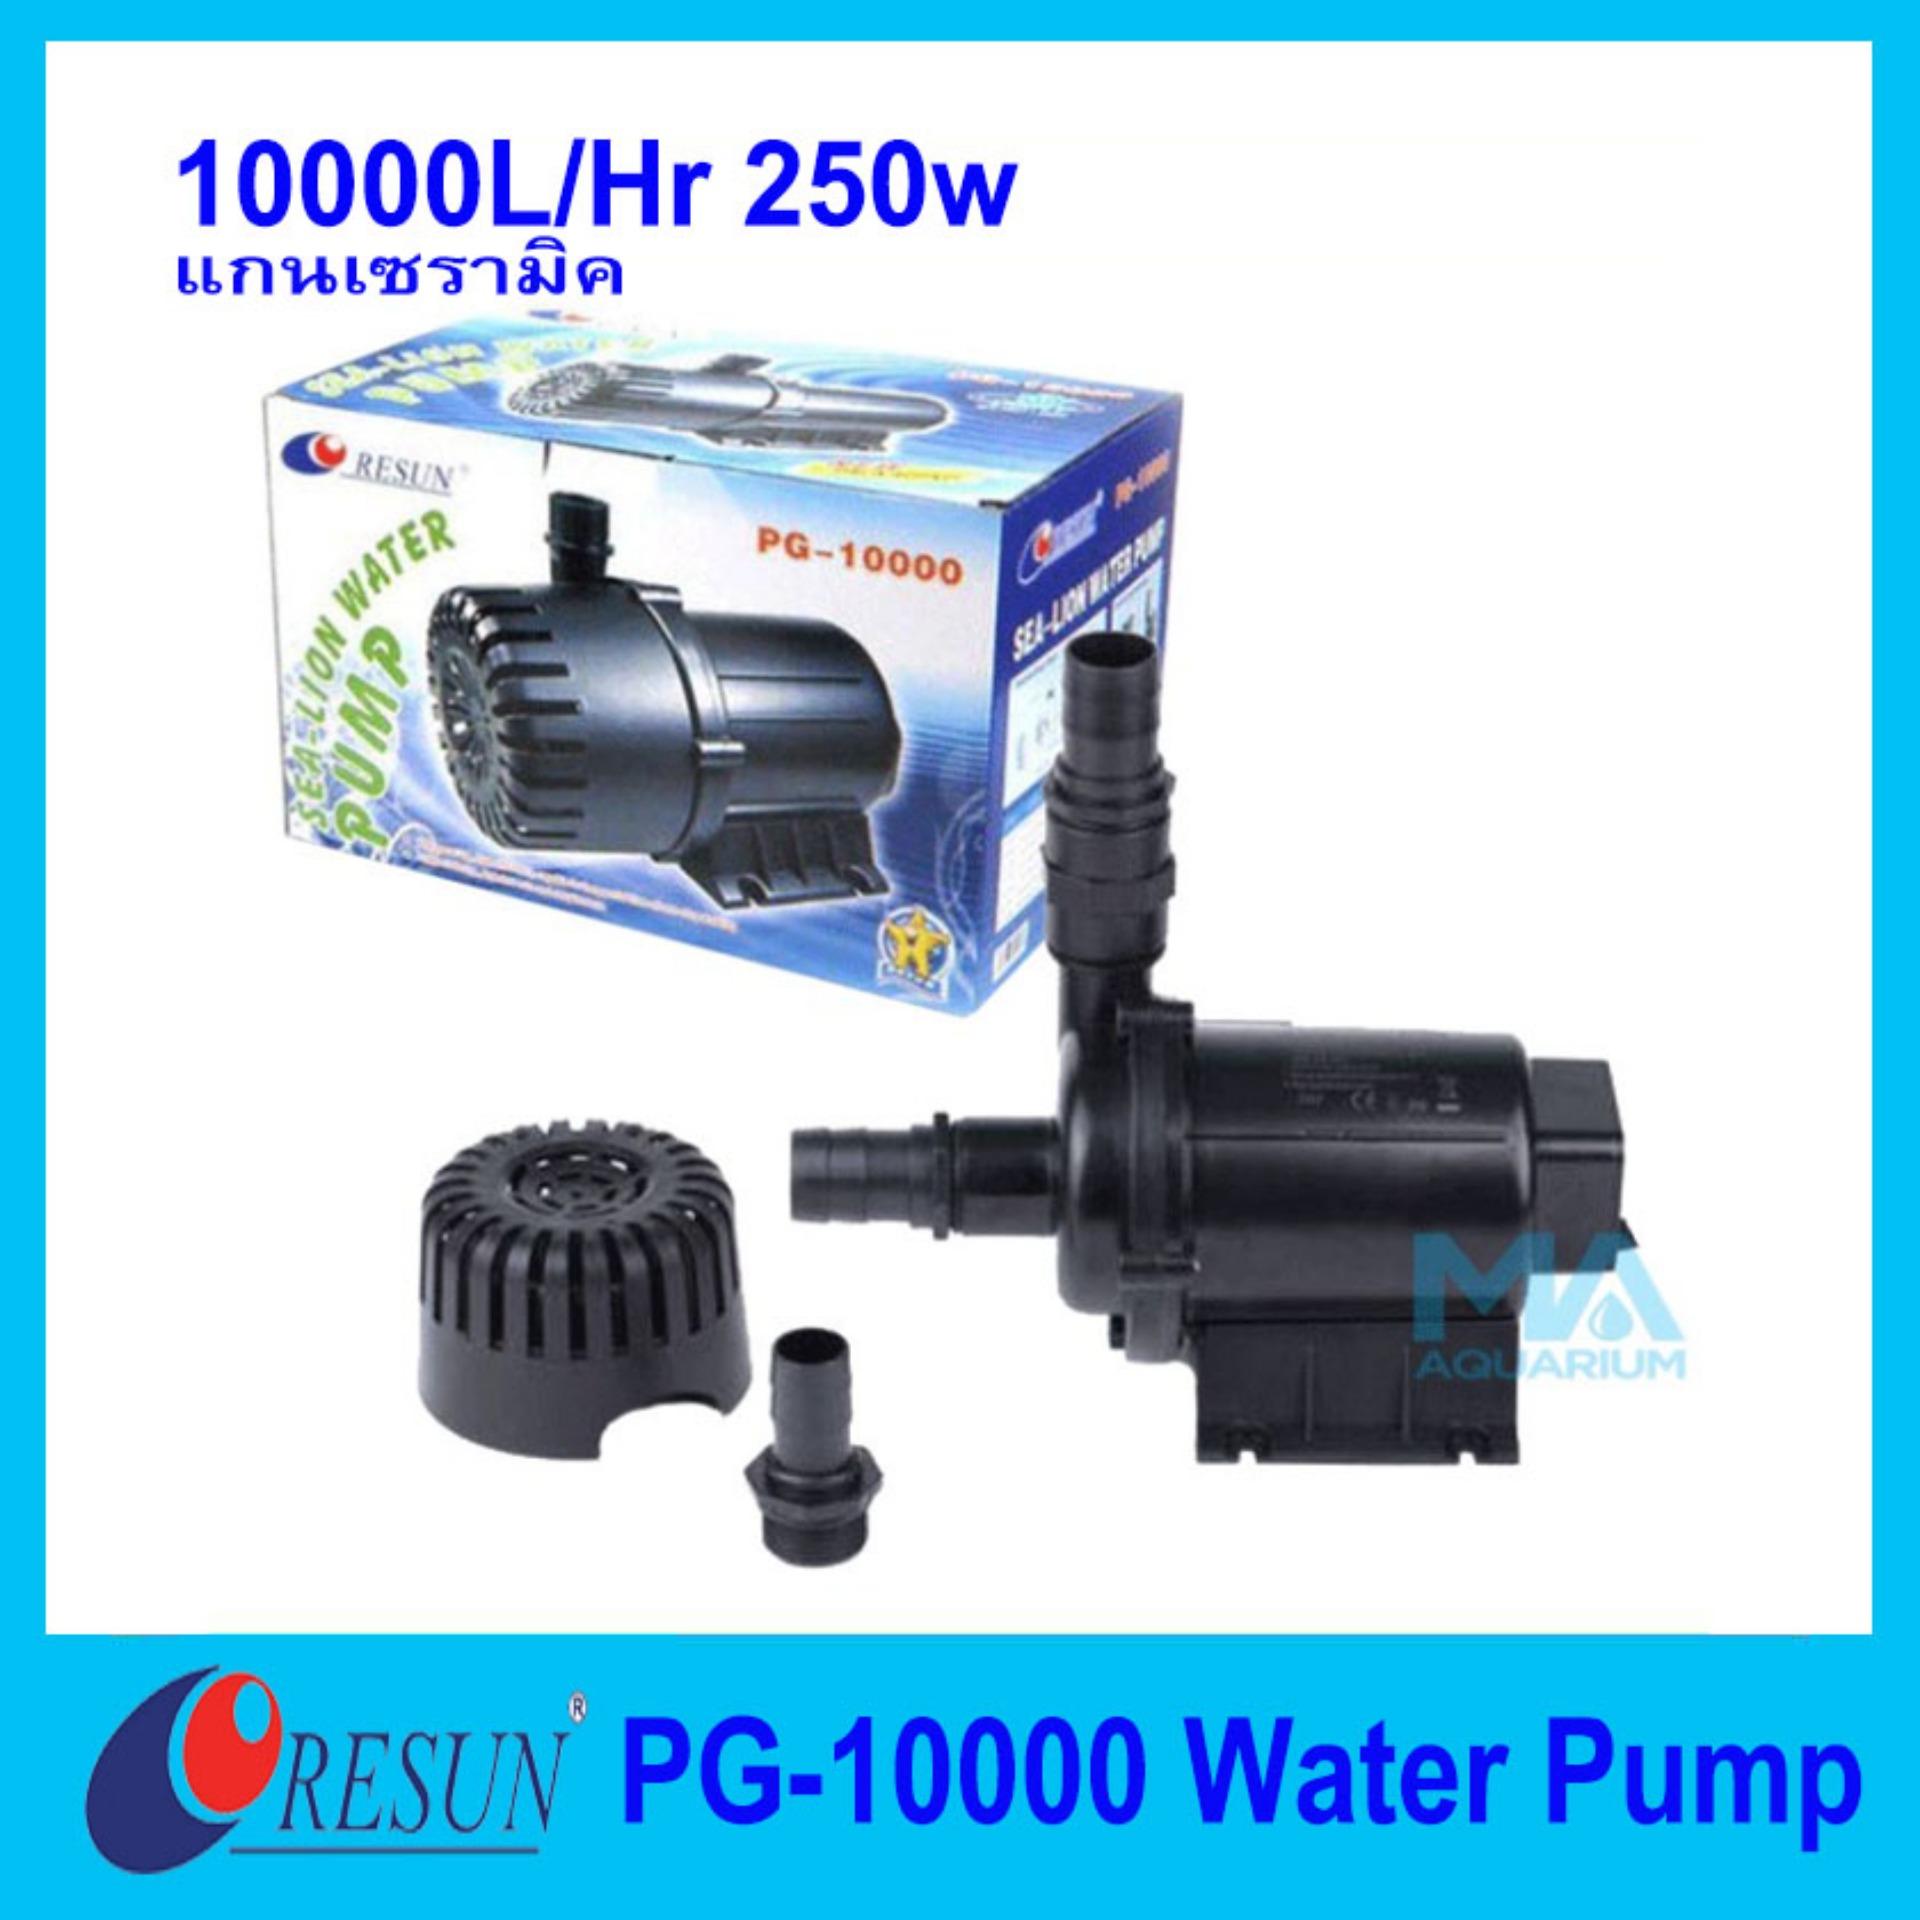 Water Pump 1 Hp ราคาถูก ซื้อออนไลน์ที่ - ก.ค. 2022 | Lazada.co.th